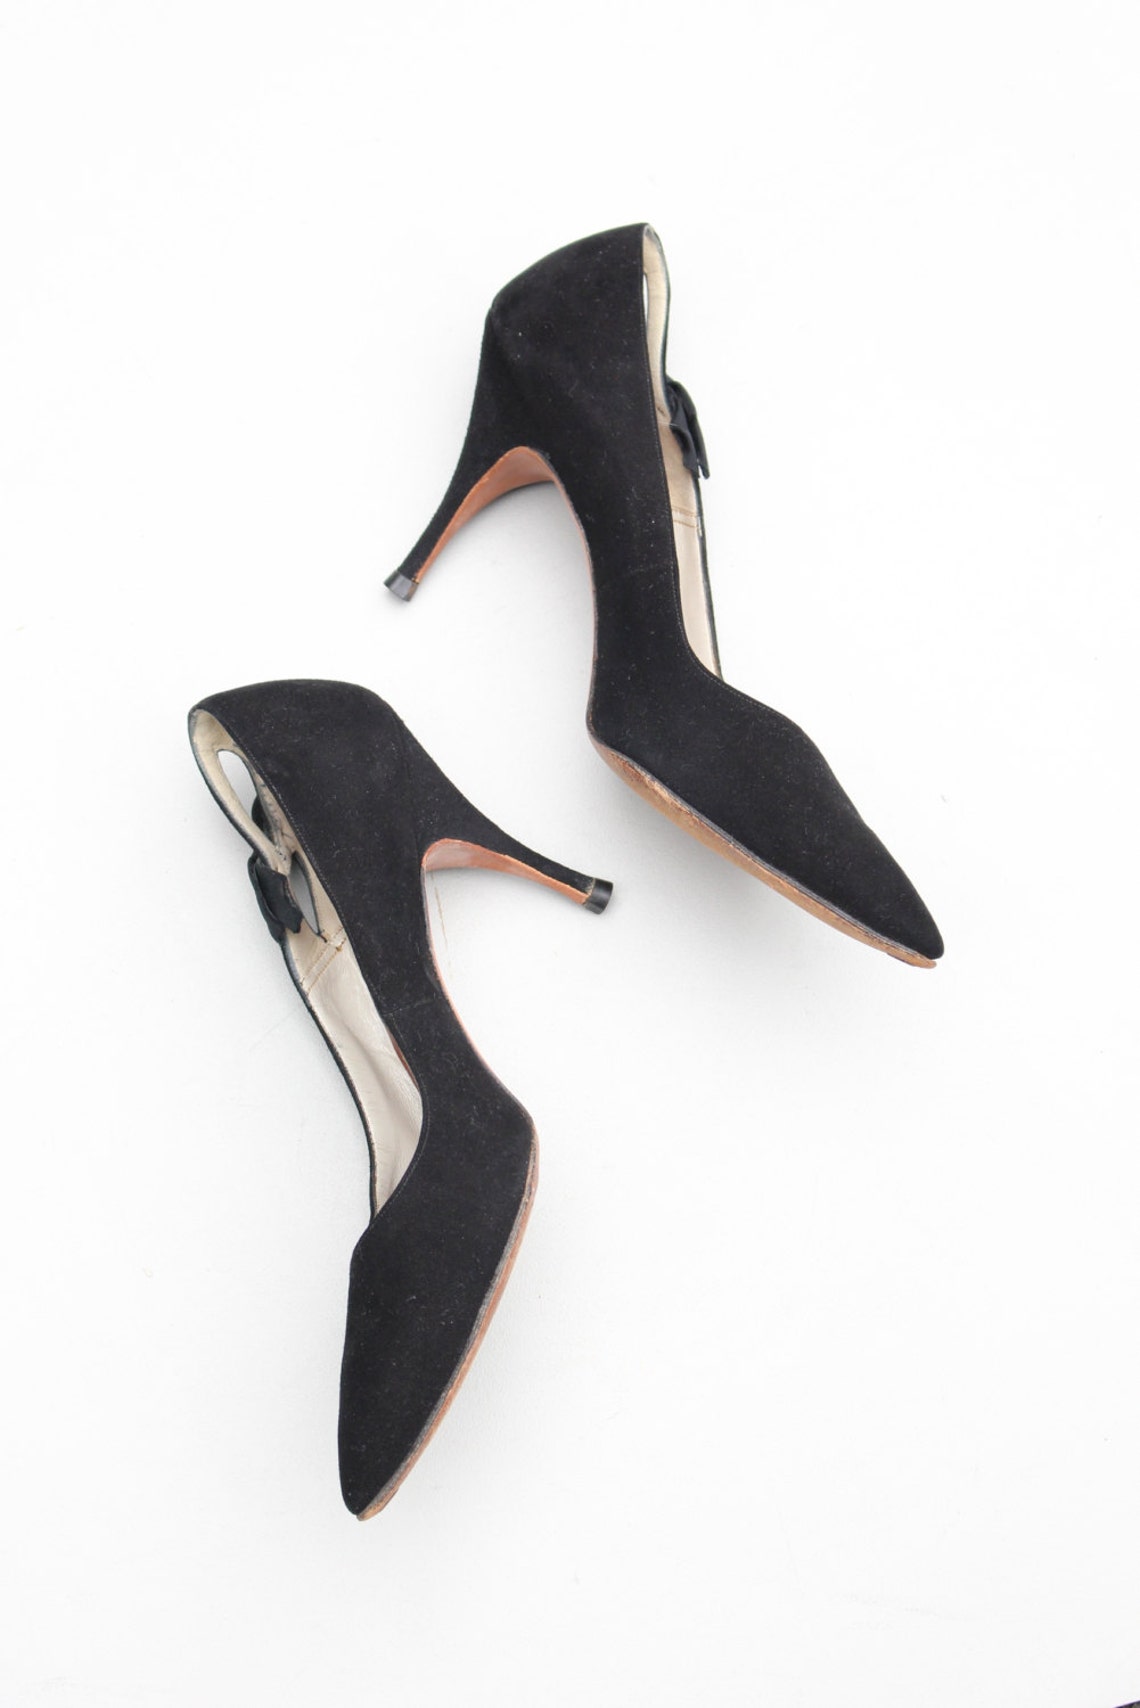 Vintage 50s couture heels black suede high heels / vintage | Etsy